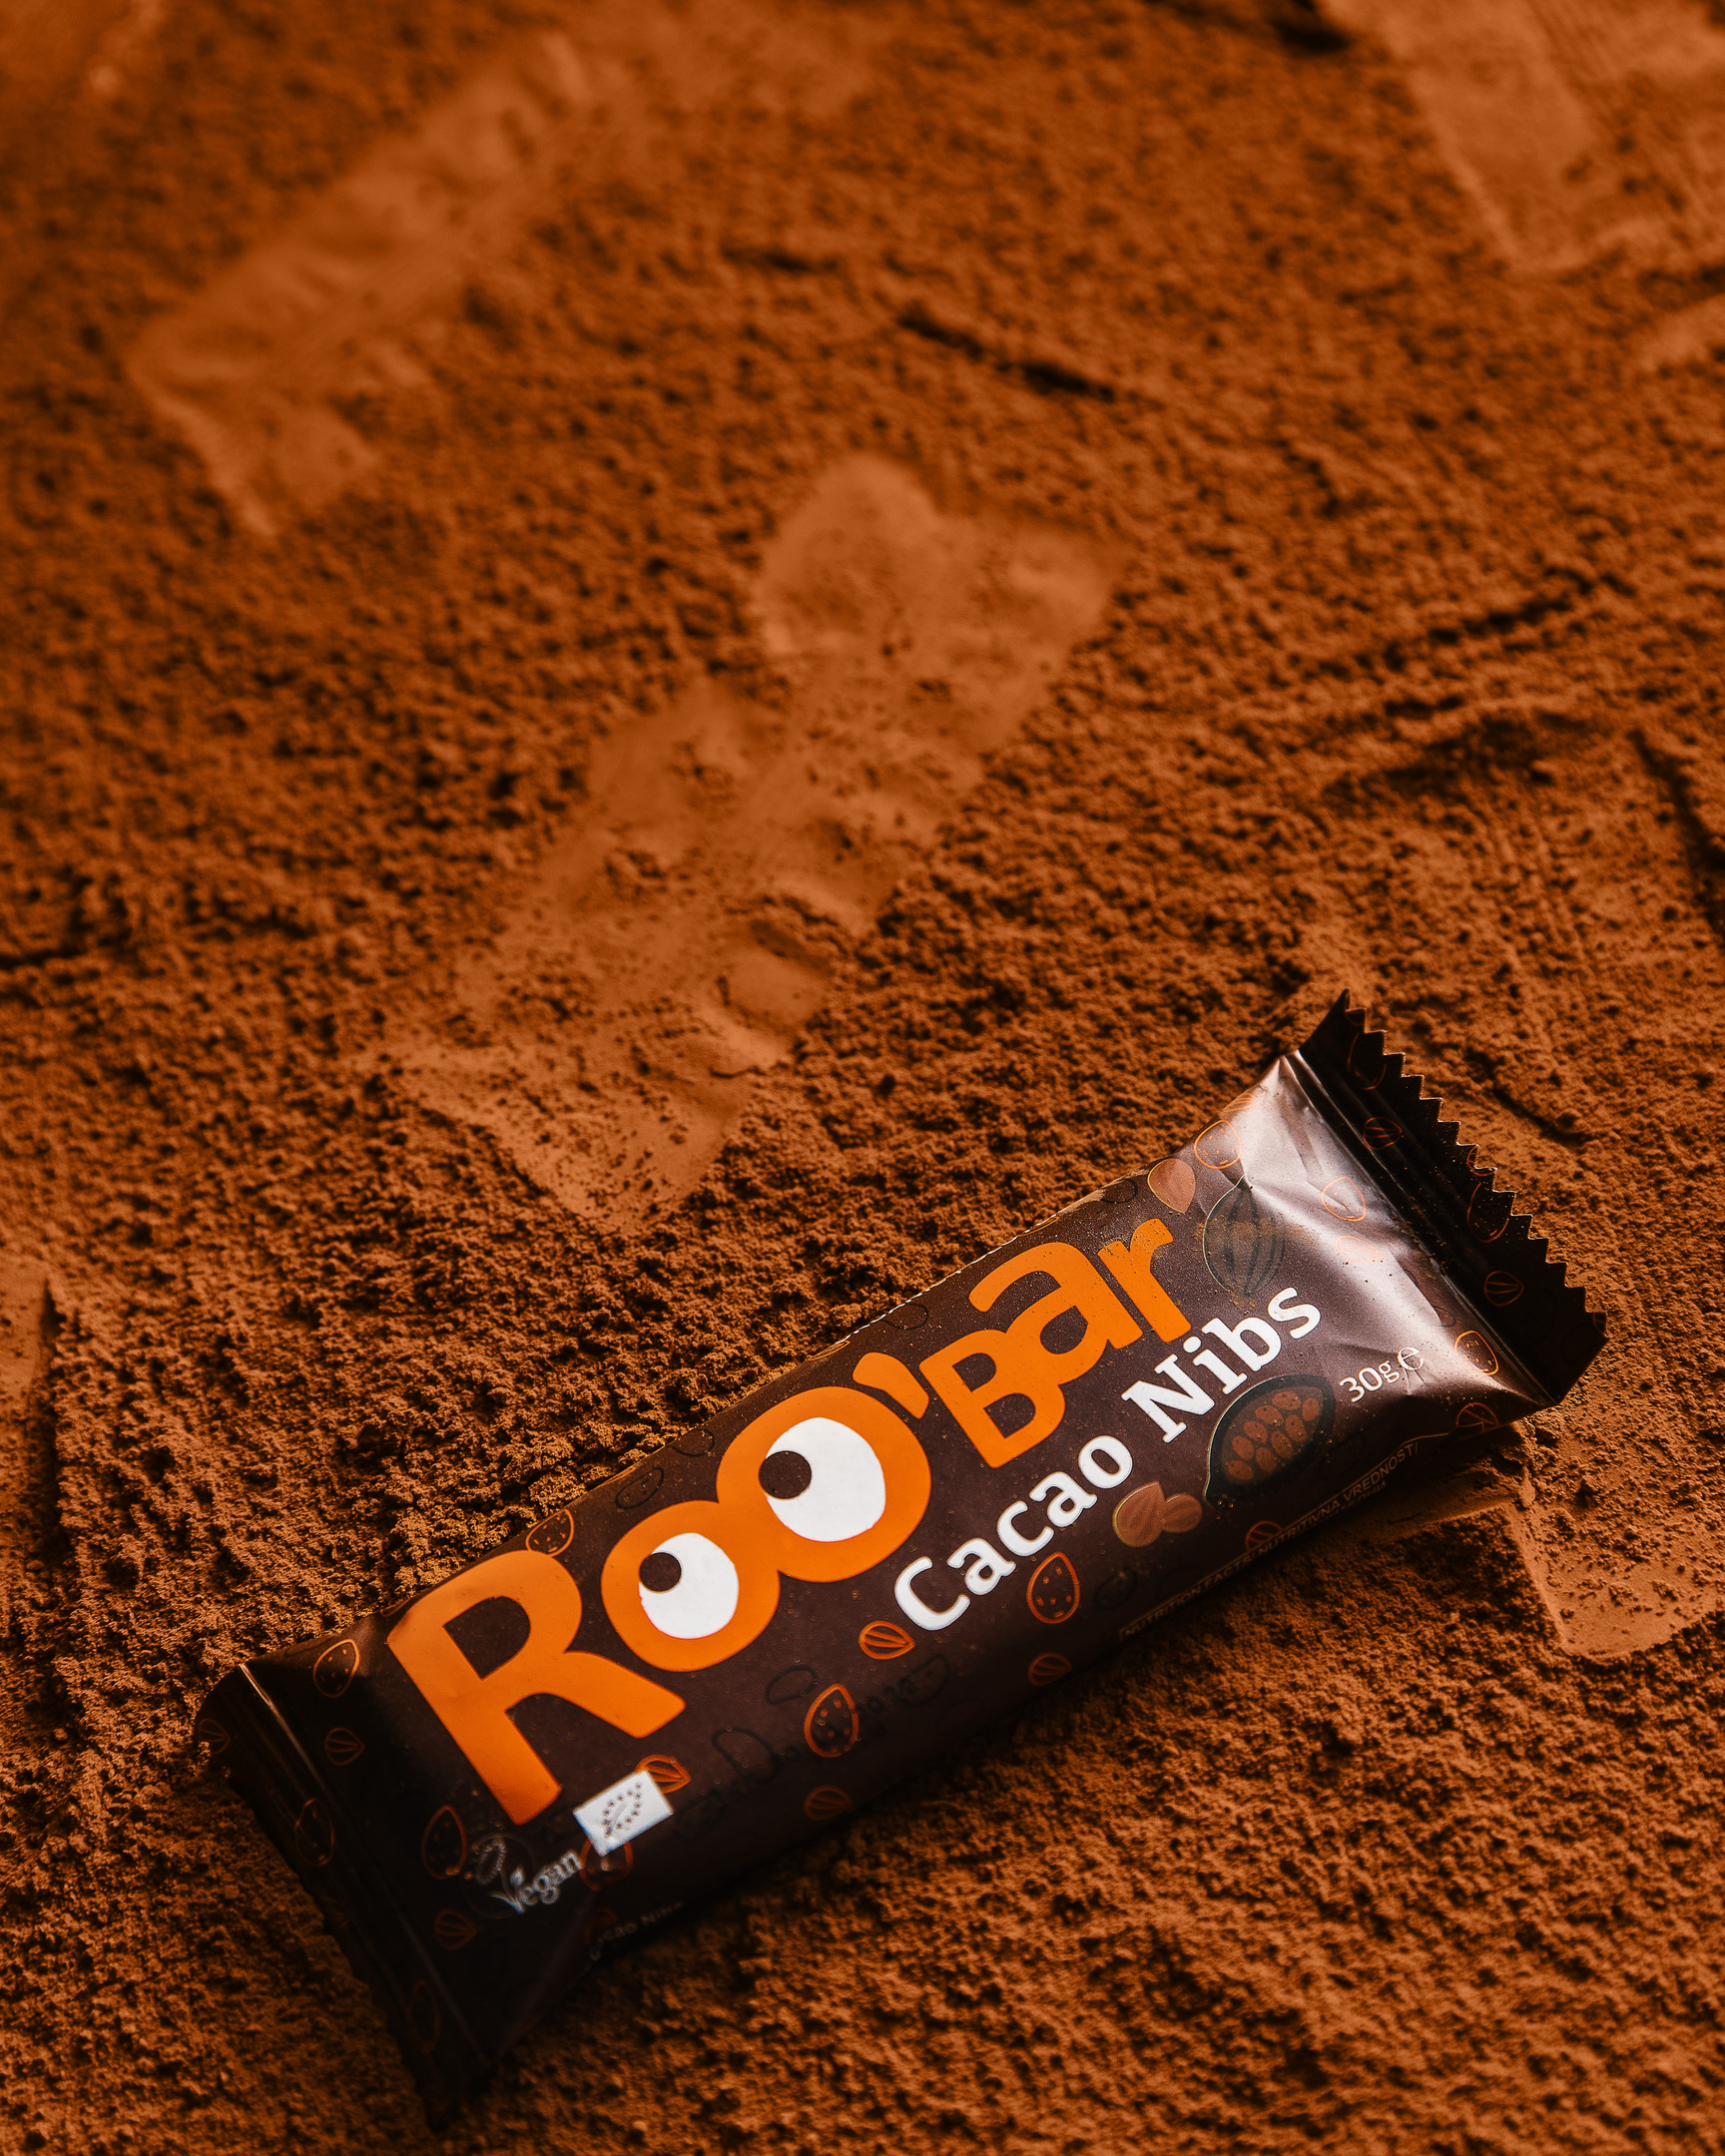 Roobar - Cacao Nibs. Roobar пълзи по повърхността, направена от какао, като първи човек на Луната.